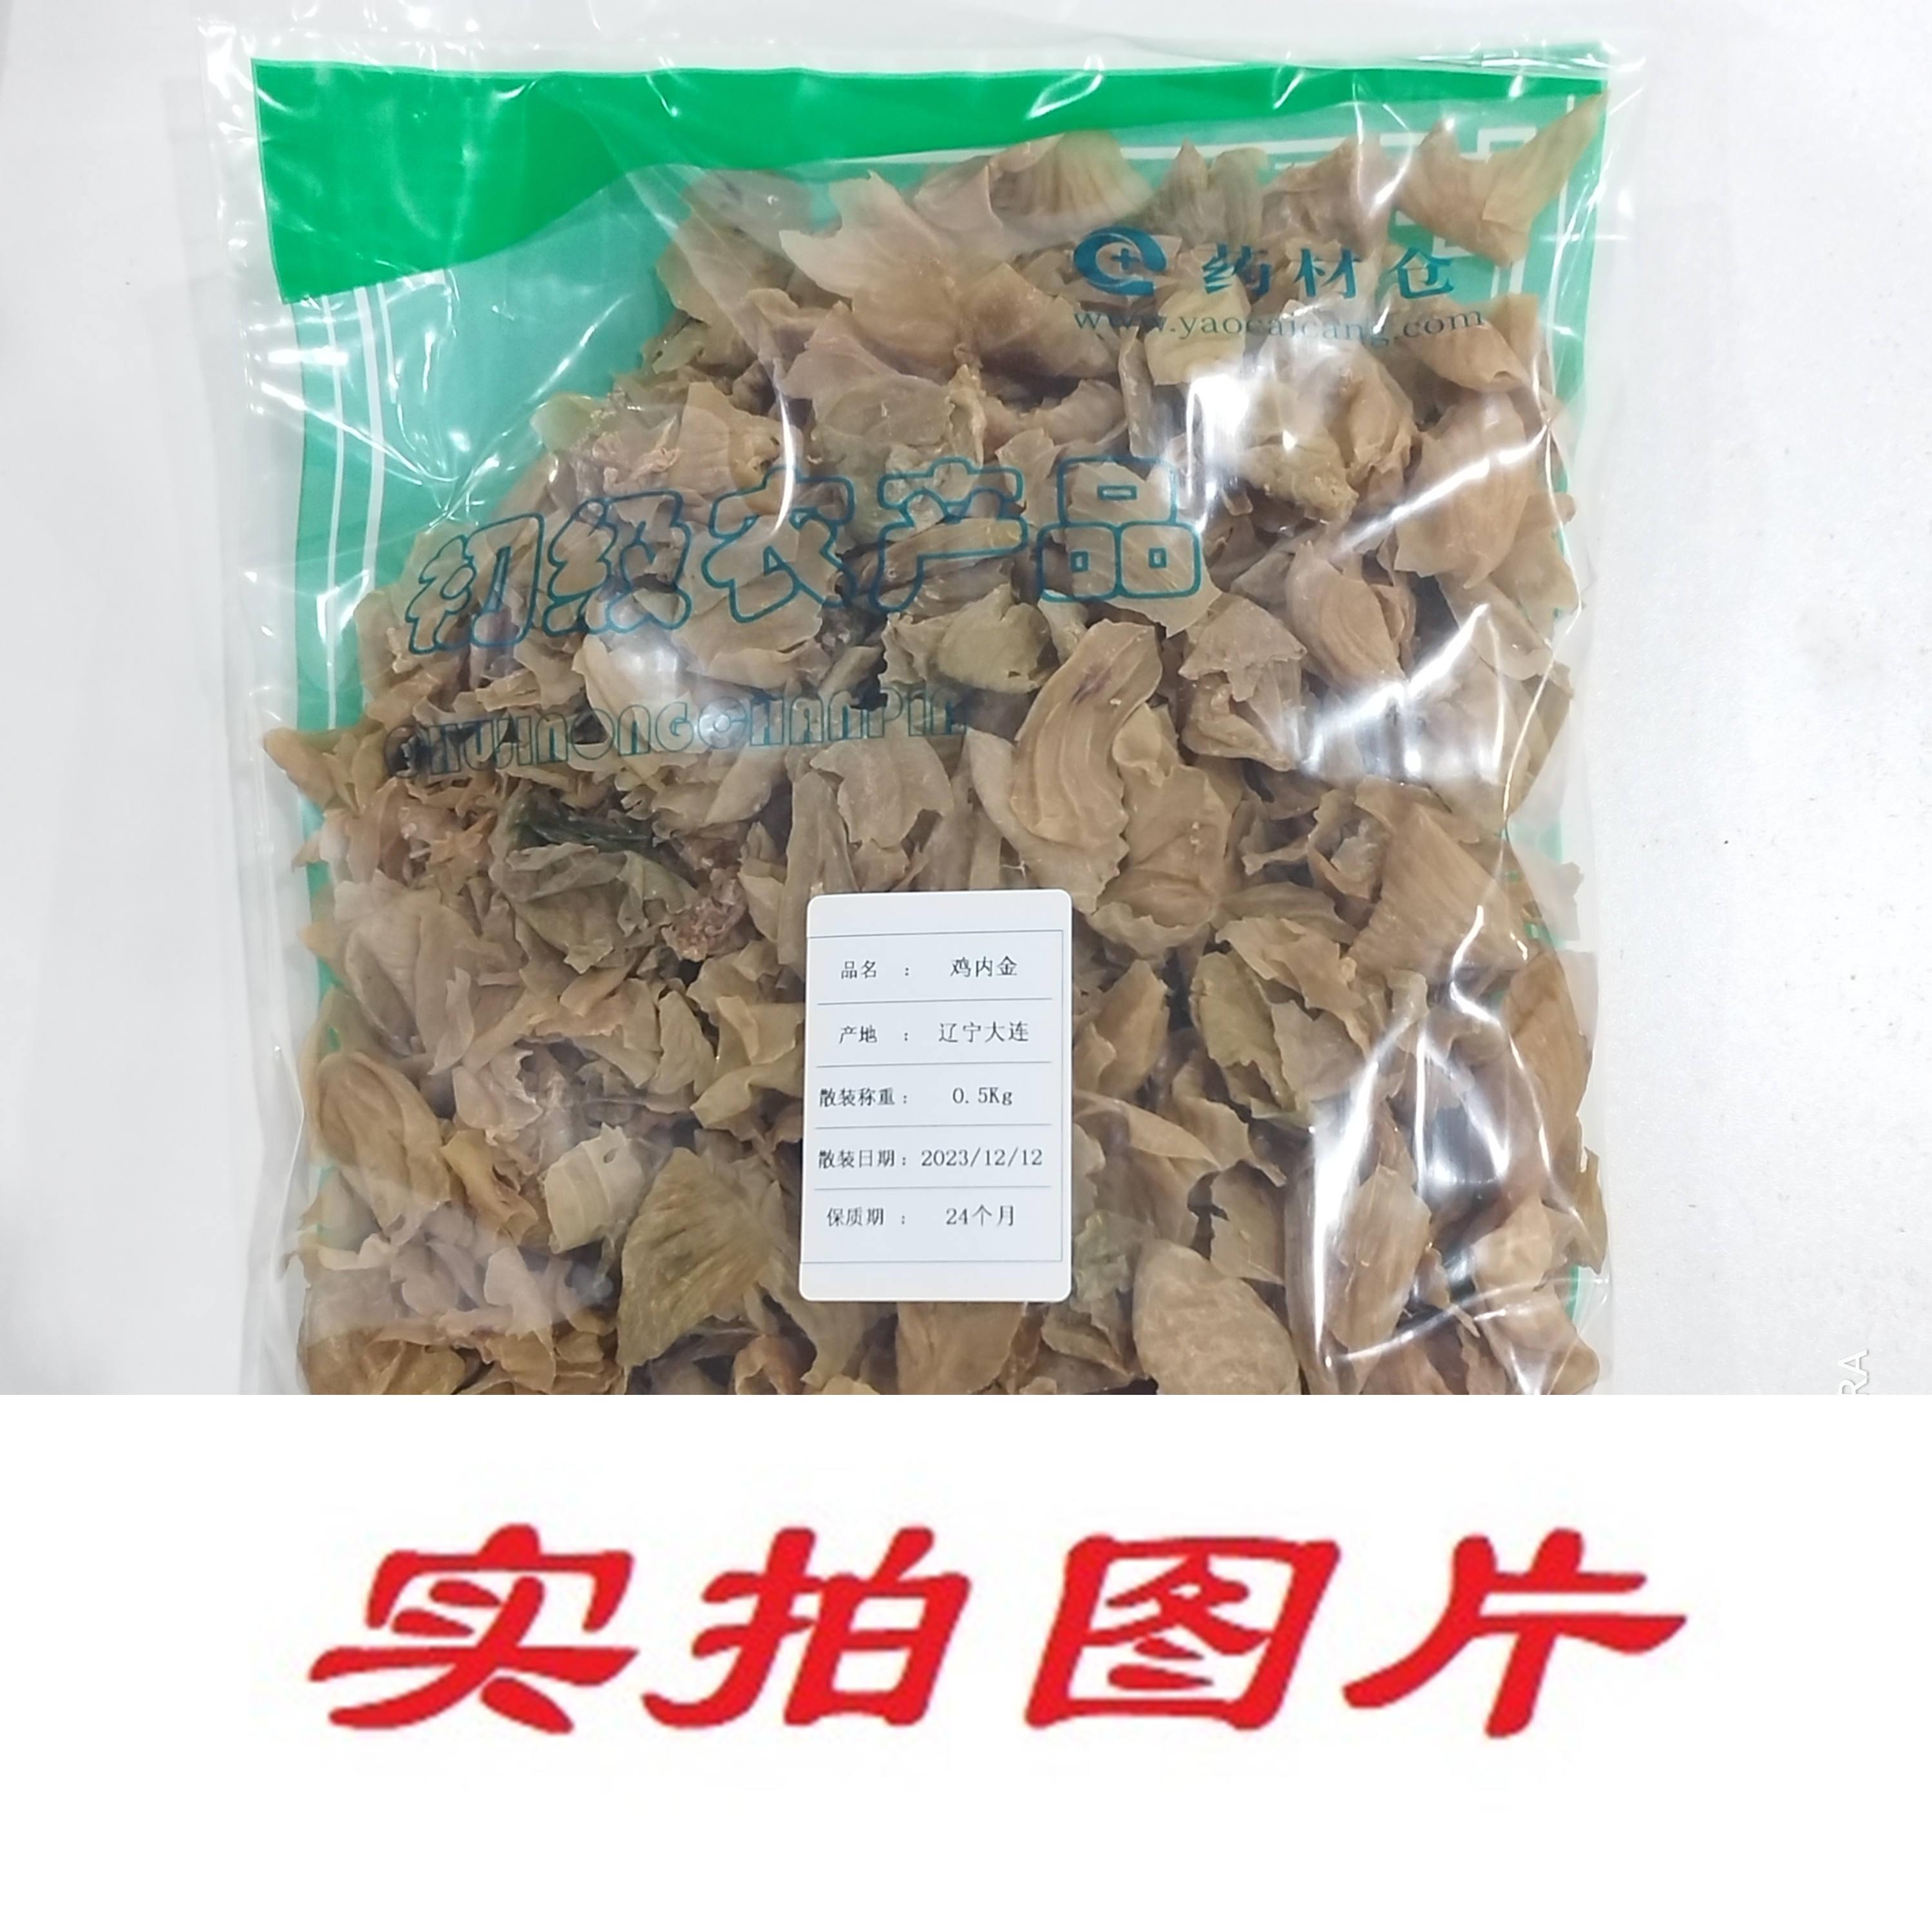 【】鸡内金0.5kg-农副产品